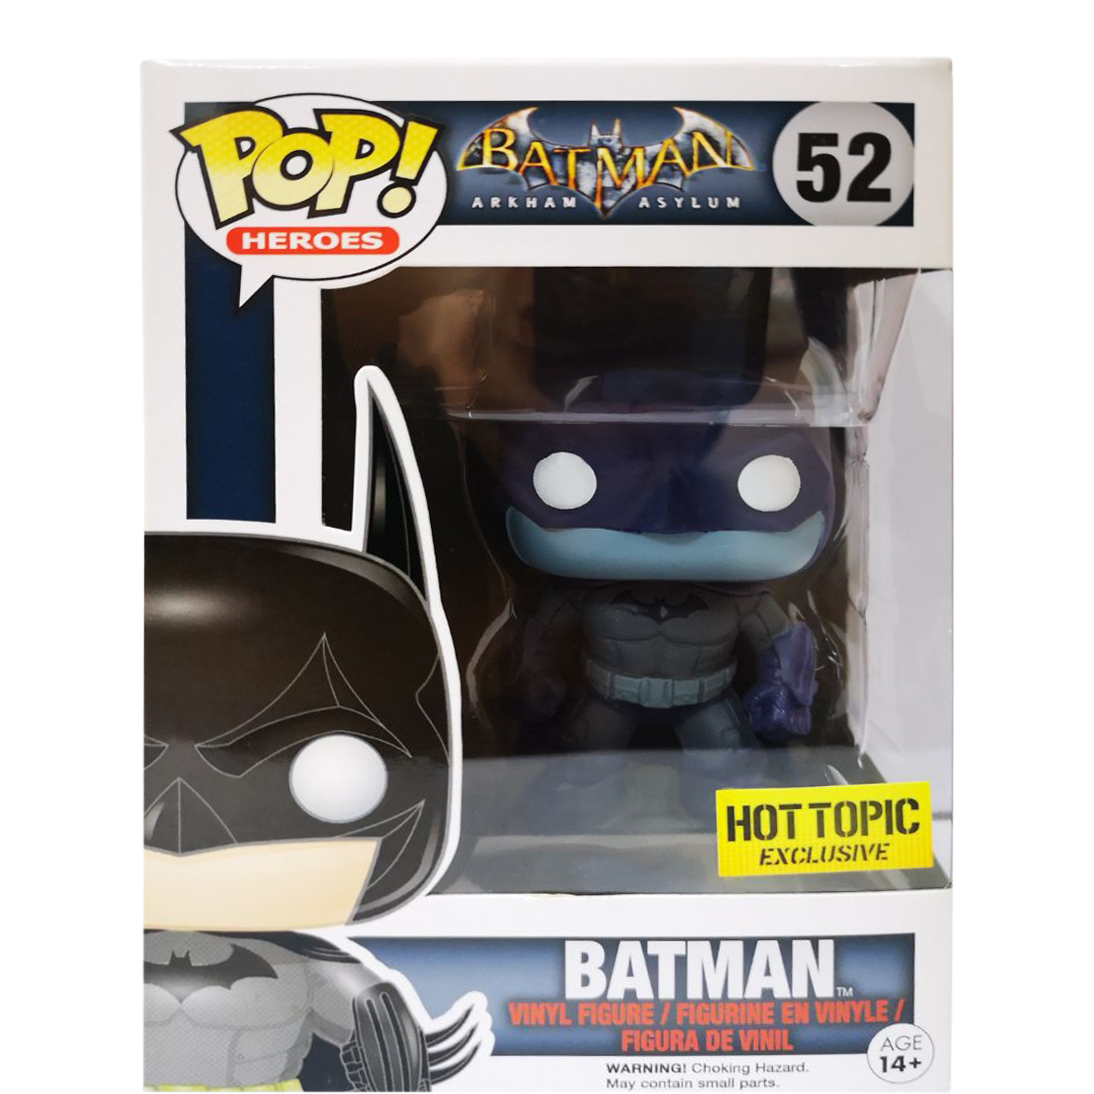 Funko Pop! Heroes Batman Arkham Asylum Batman Hot Topic Exclusive